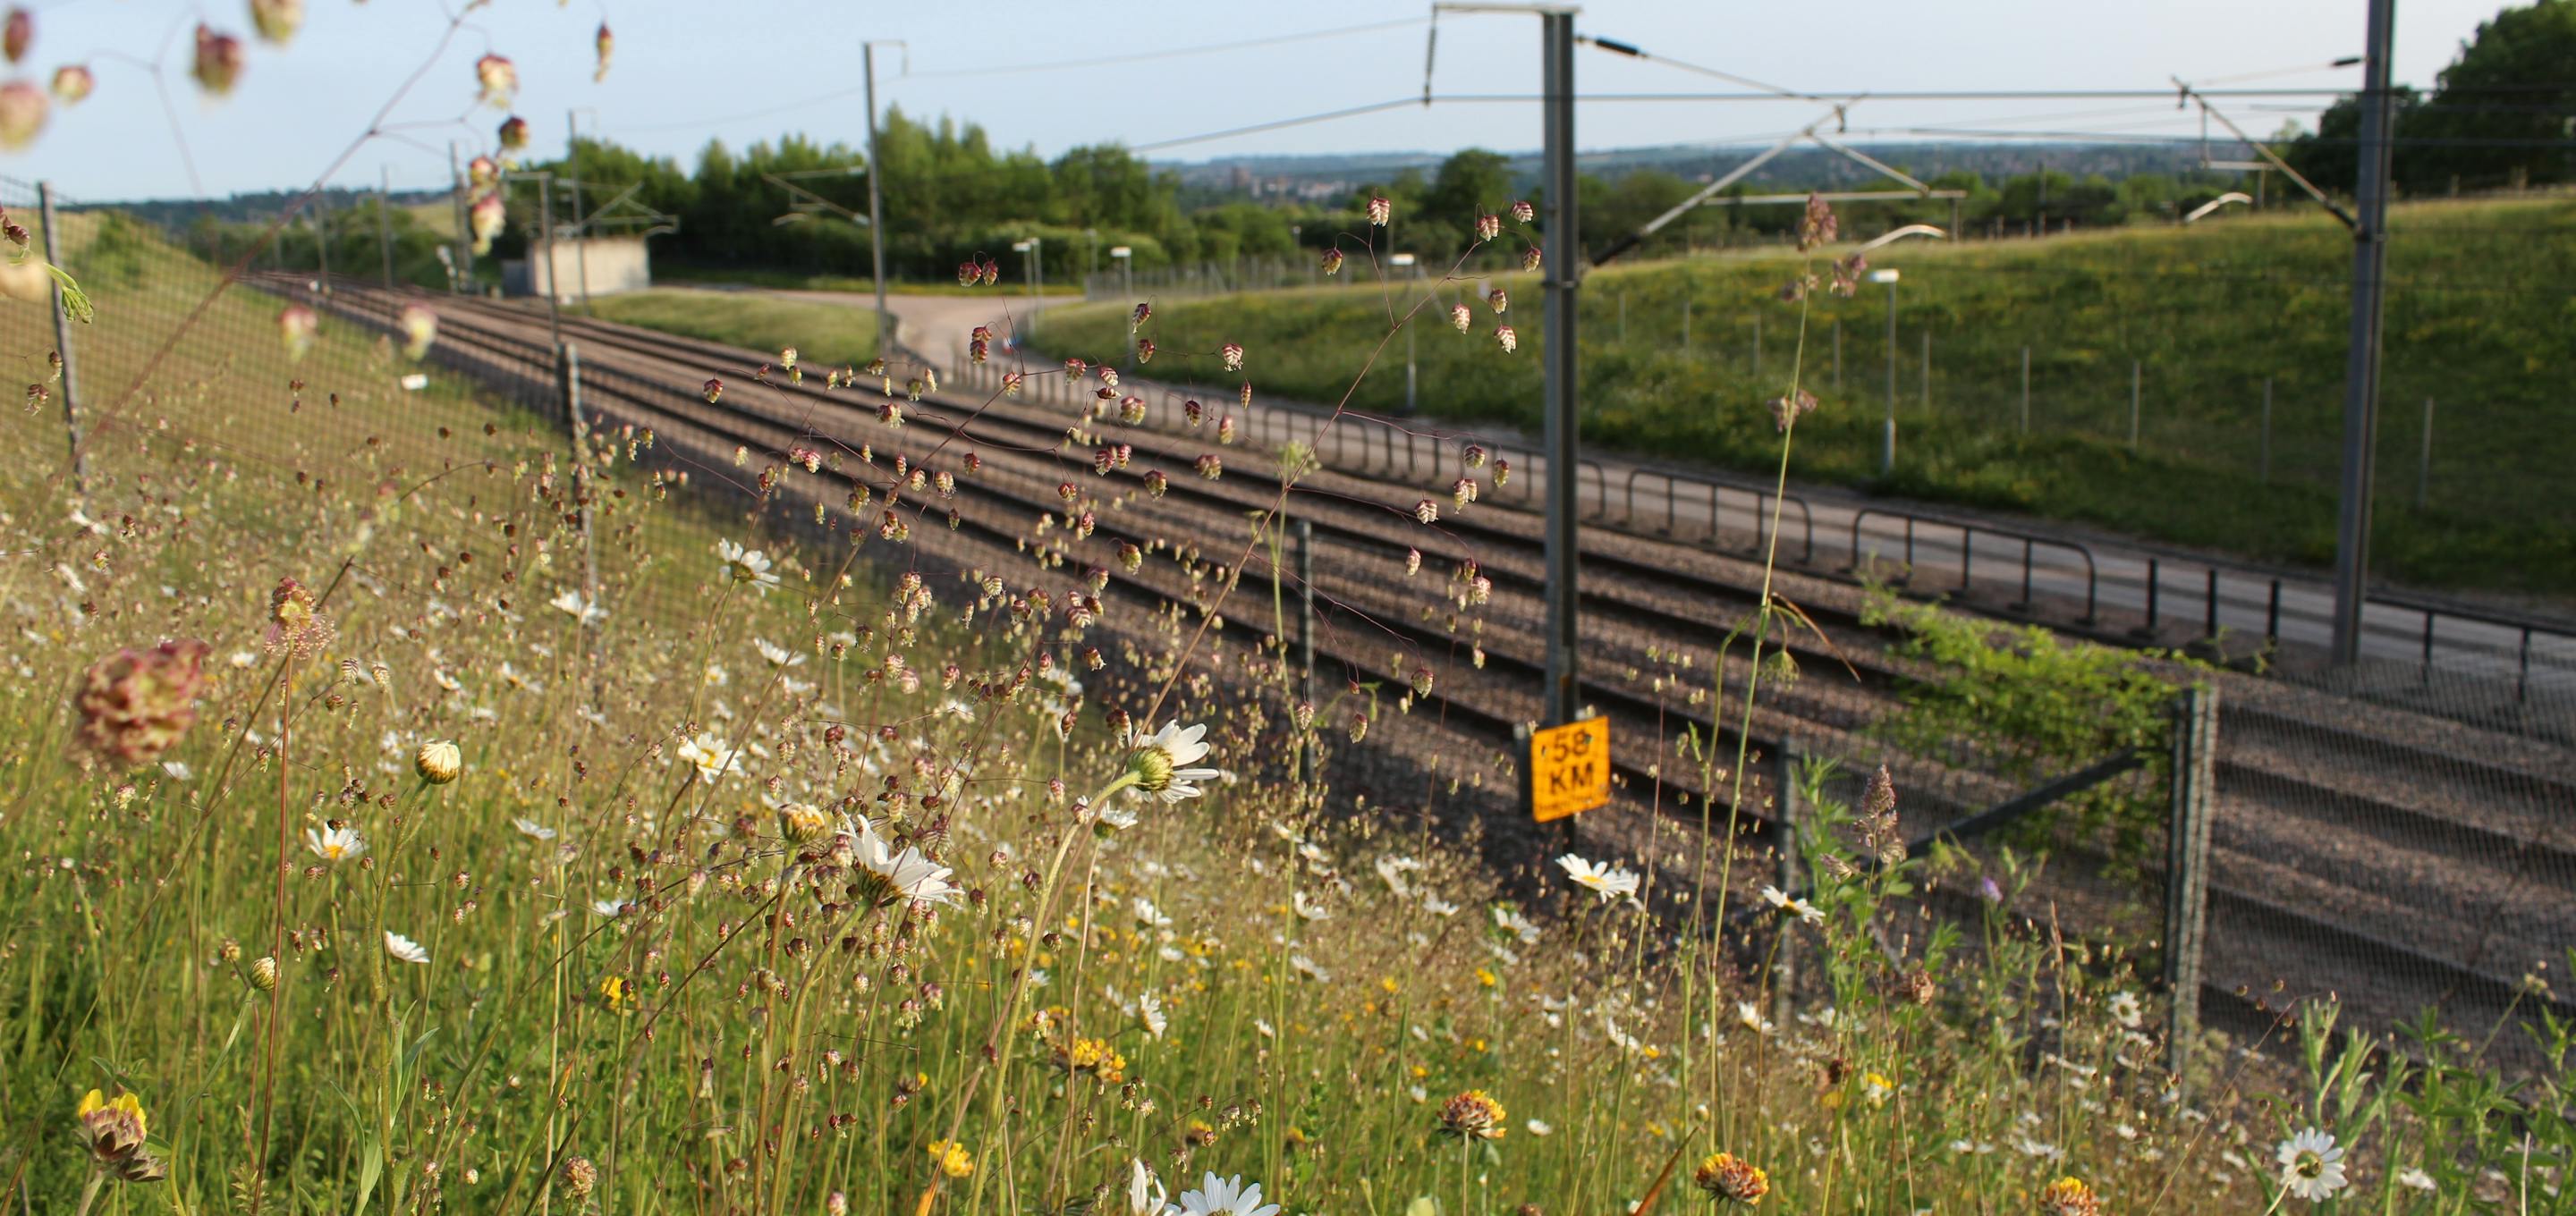 HS1 railway line next to grass verge